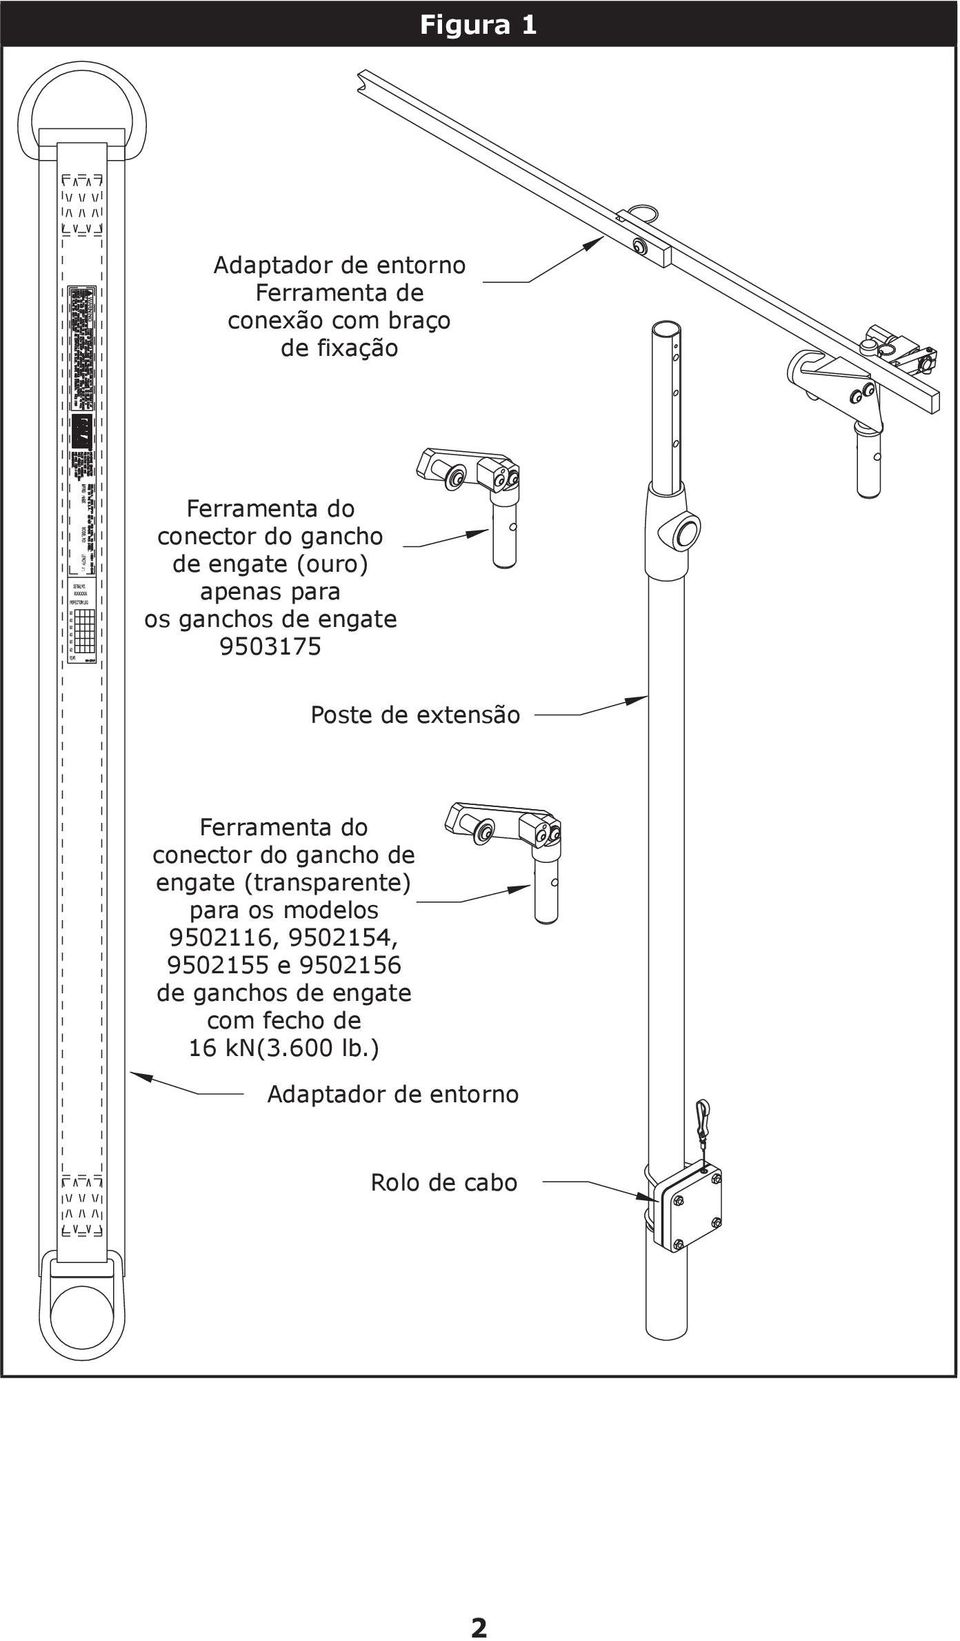 Ferramenta do conector do gancho de engate (transparente) para os modelos 9502116, 9502154,